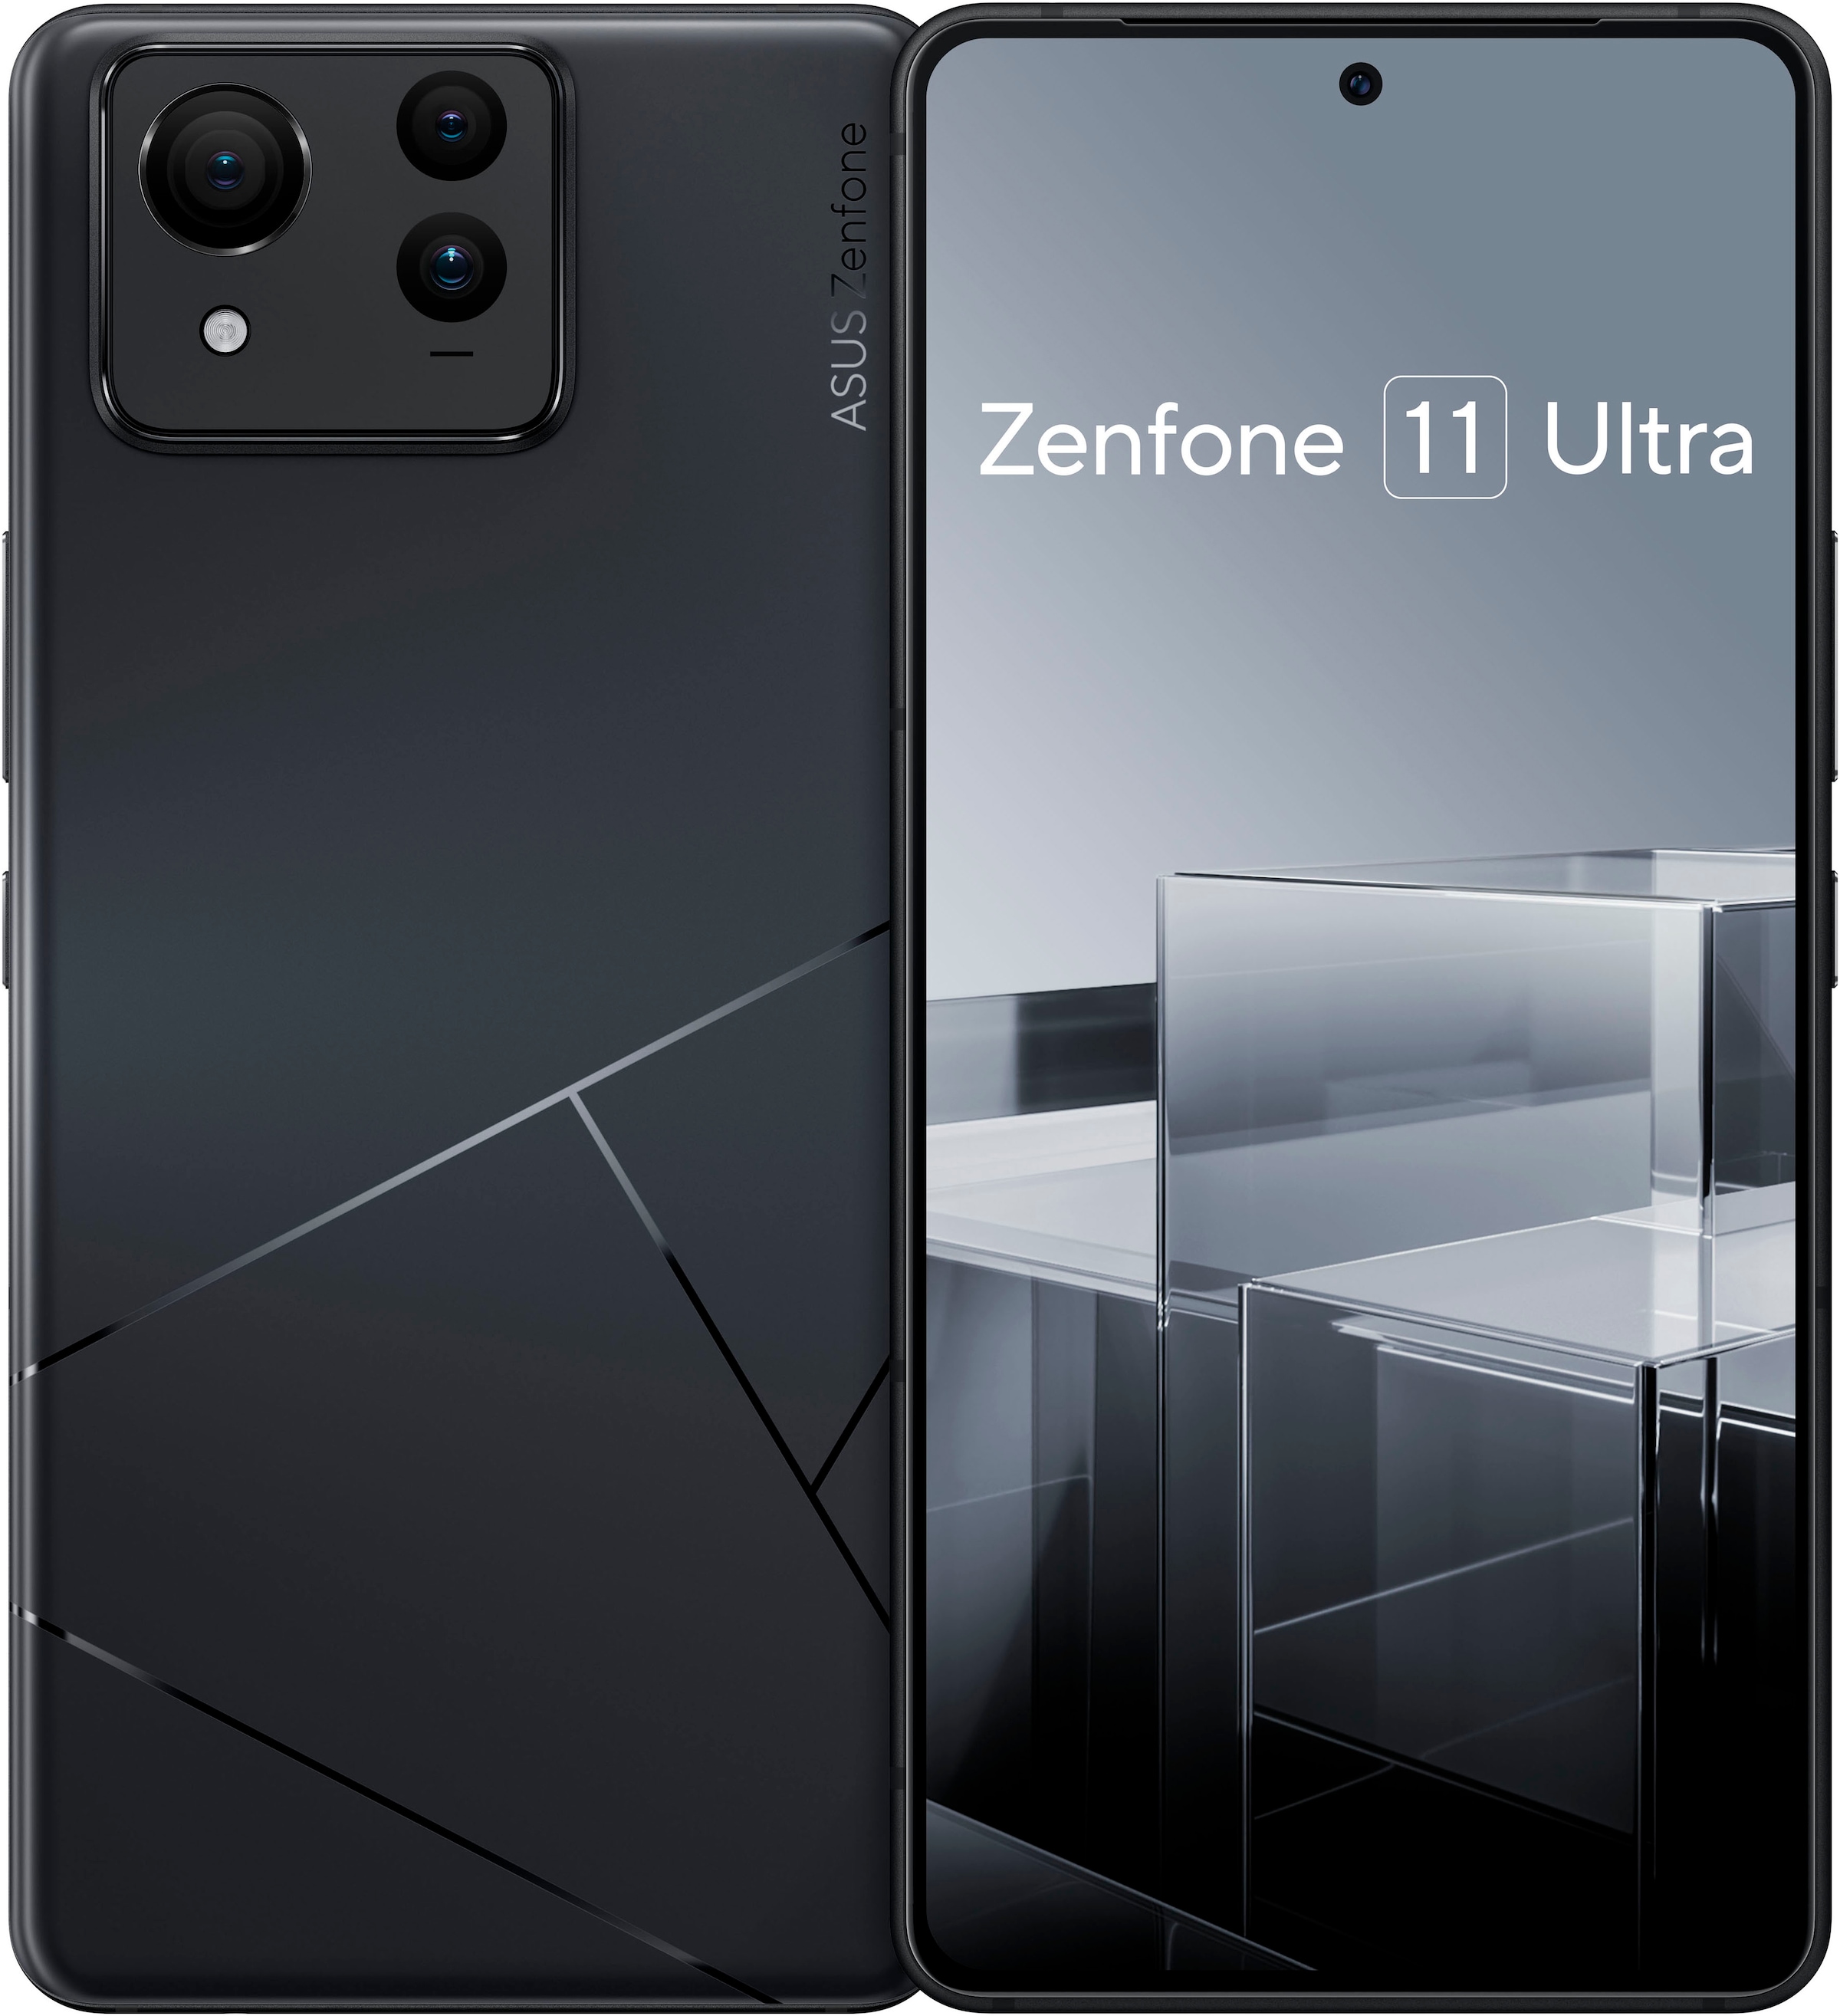 Smartphone »Zenfone 11 Ultra 256 GB«, schwarz, 17,22 cm/6,78 Zoll, 256 GB...